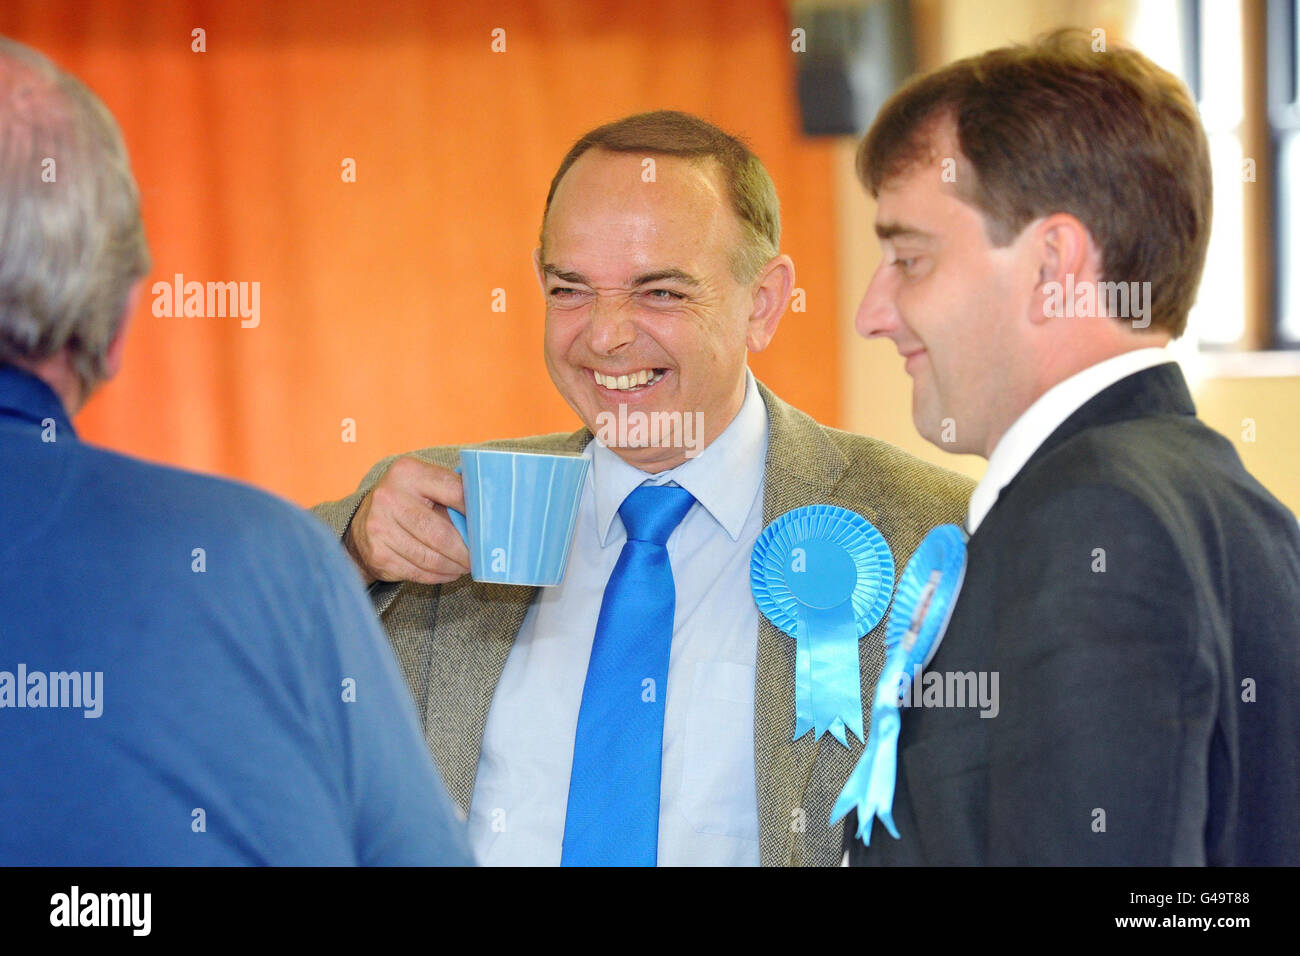 Il leader del partito conservatore gallese Nick Bourne (al centro) durante una visita al Club conservatore di Usk, nel Galles sudorientale, mentre gli elettori vanno oggi alle urne per le elezioni dell'Assemblea gallese e il referendum AV. Foto Stock